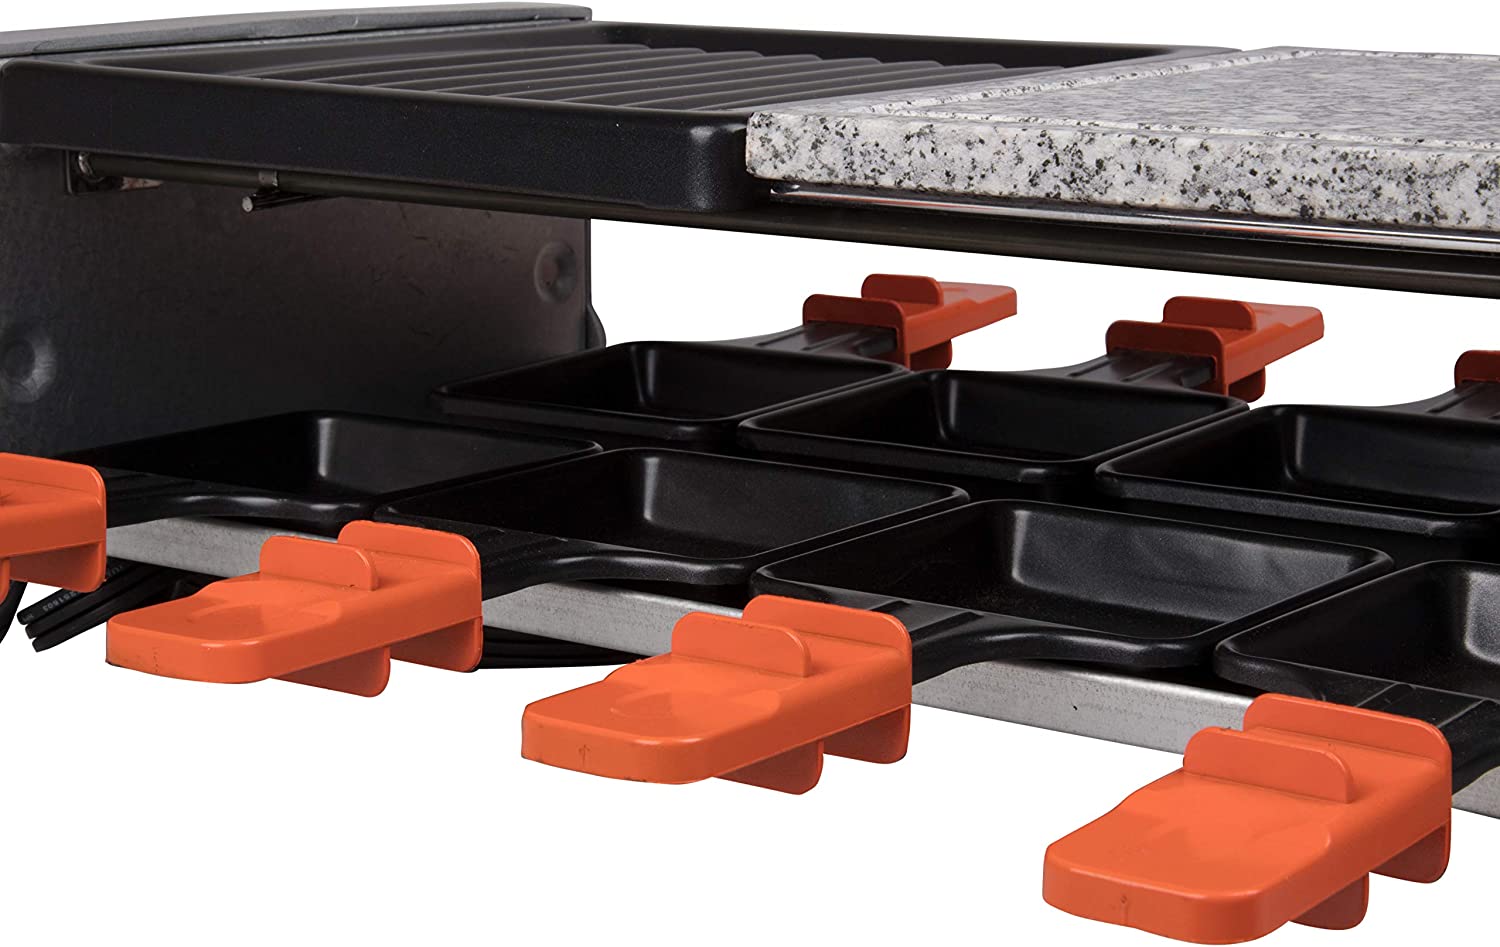 کباب پز مدل MasterChef Dual Raclette Table Grill - ارسال ۱۰ الی ۱۵ روز کاری